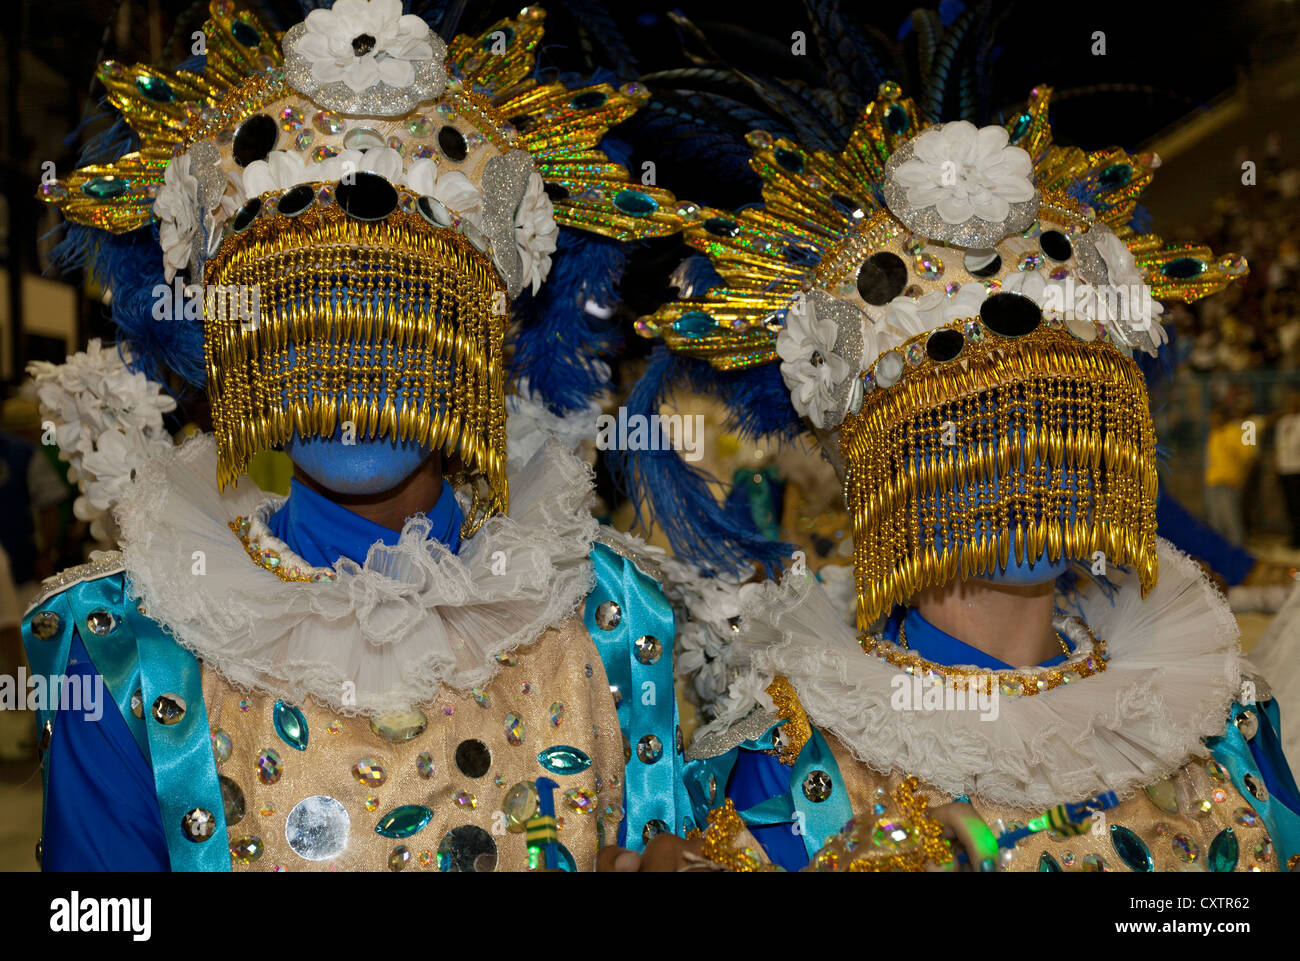 Fêtards masqués ont défilé du carnaval Rio de Janeiro Brésil Banque D'Images